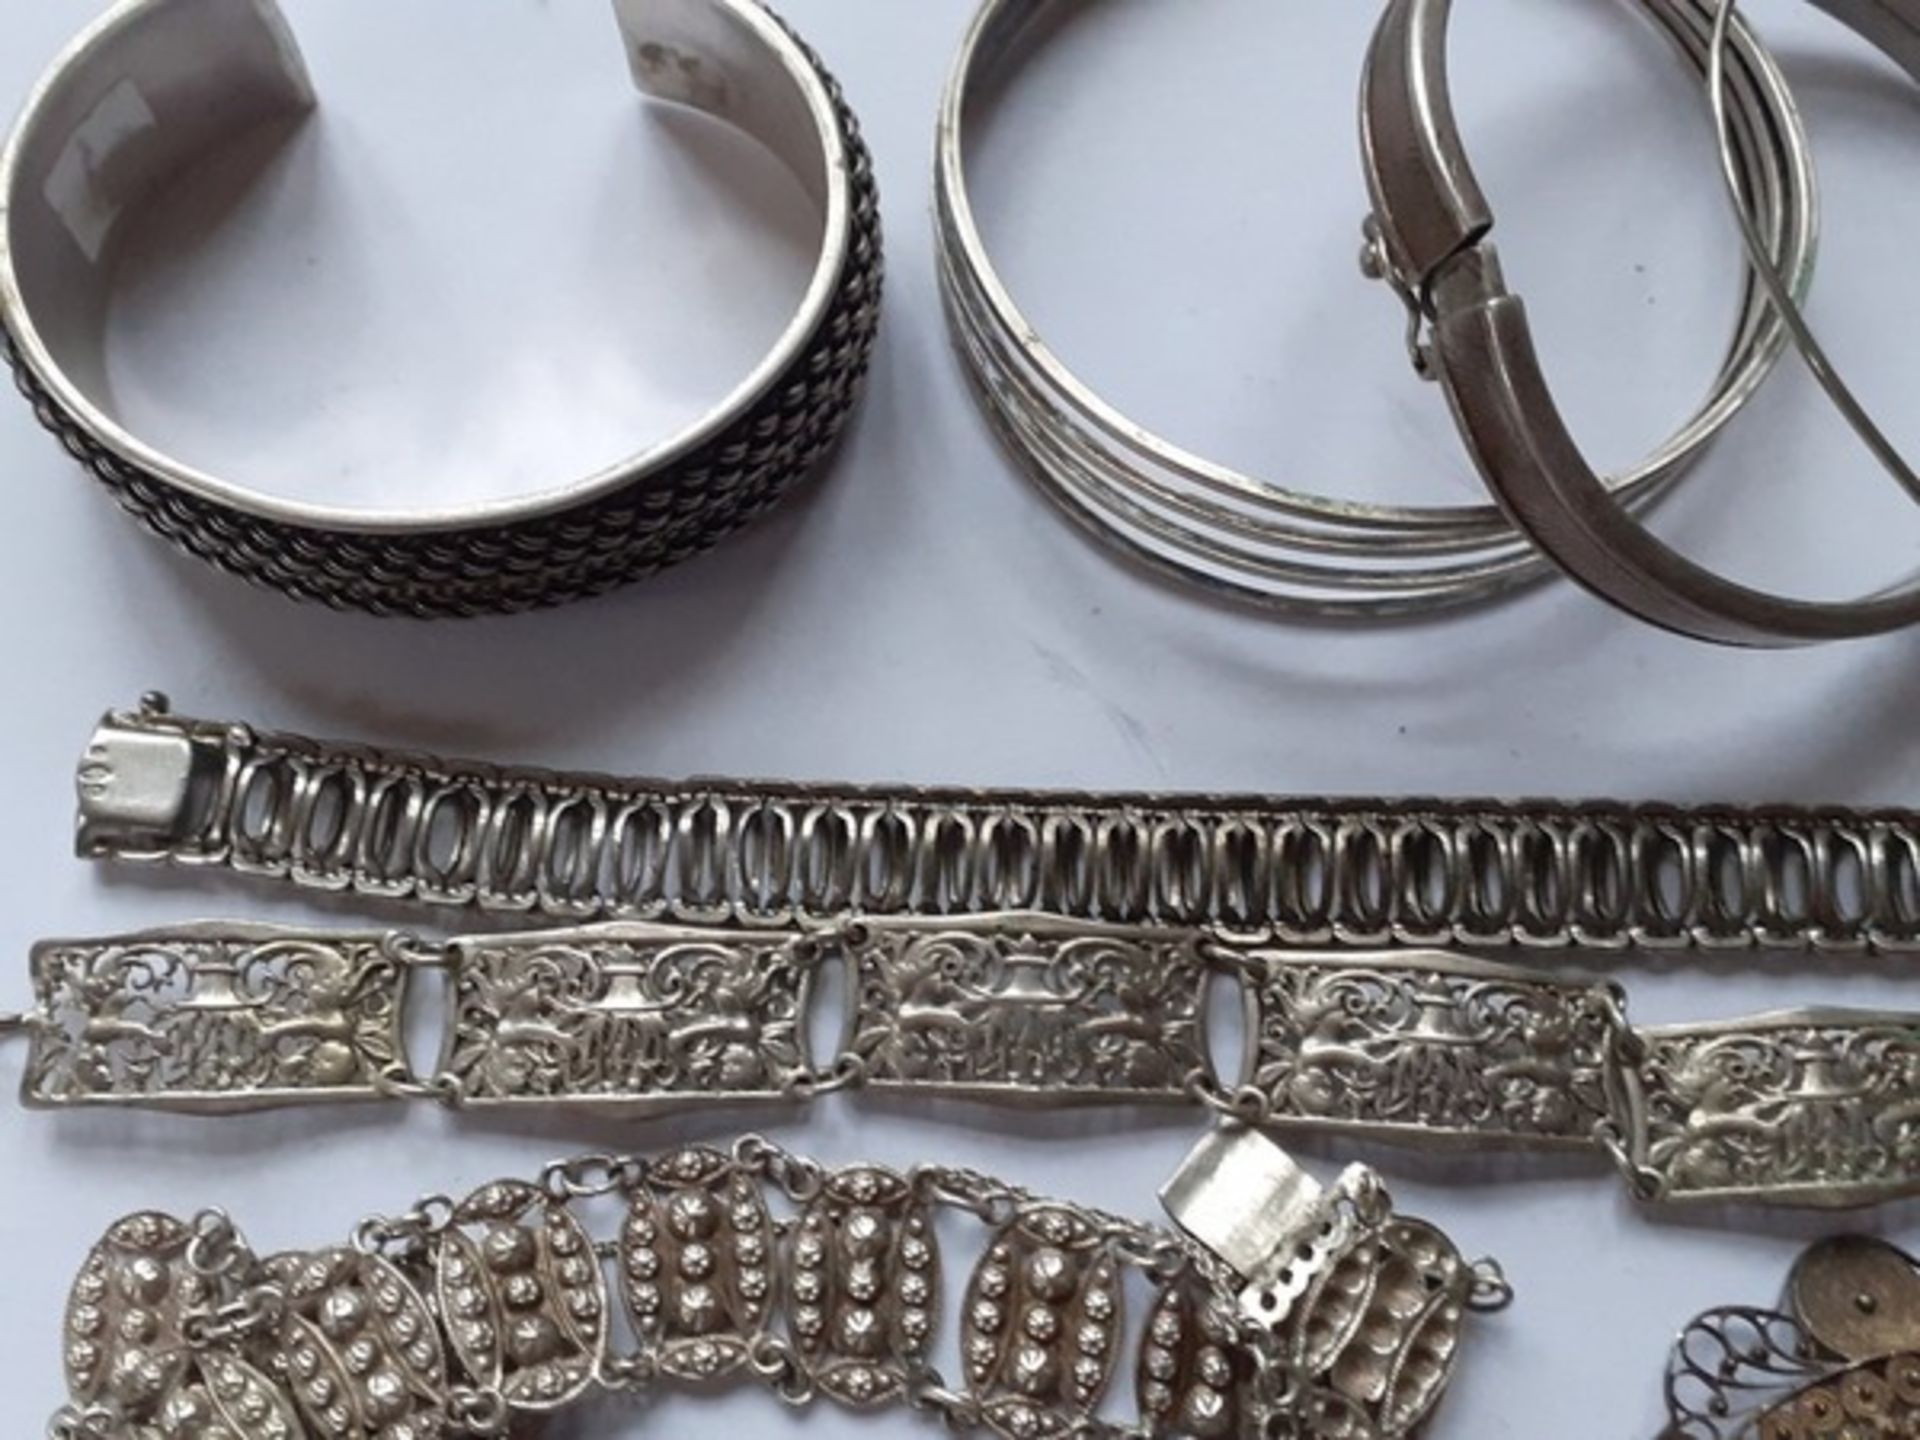 (Zilver) Zilveren armbandenDivers zilveren armbanden. Conditie: Deels beschadigd. - Bild 3 aus 5